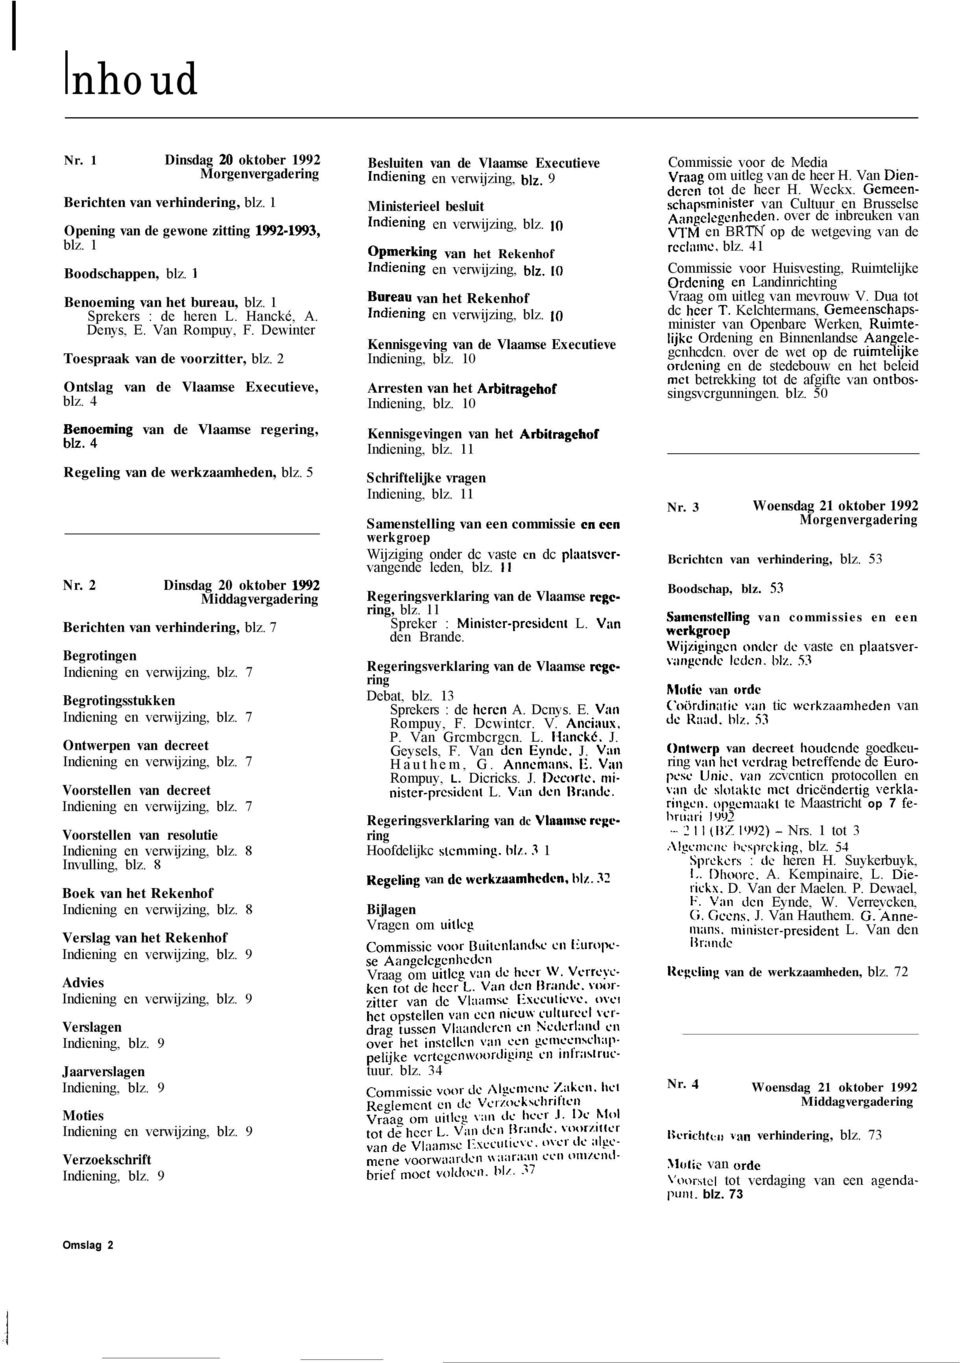 4 Regeling van de werkzaamheden, blz. 5 Nr. 2 Dinsdag 20 oktober 1992 Middagvergadering Berichten van verhindering, blz. 7 Begrotingen Indiening en verwijzing, blz.